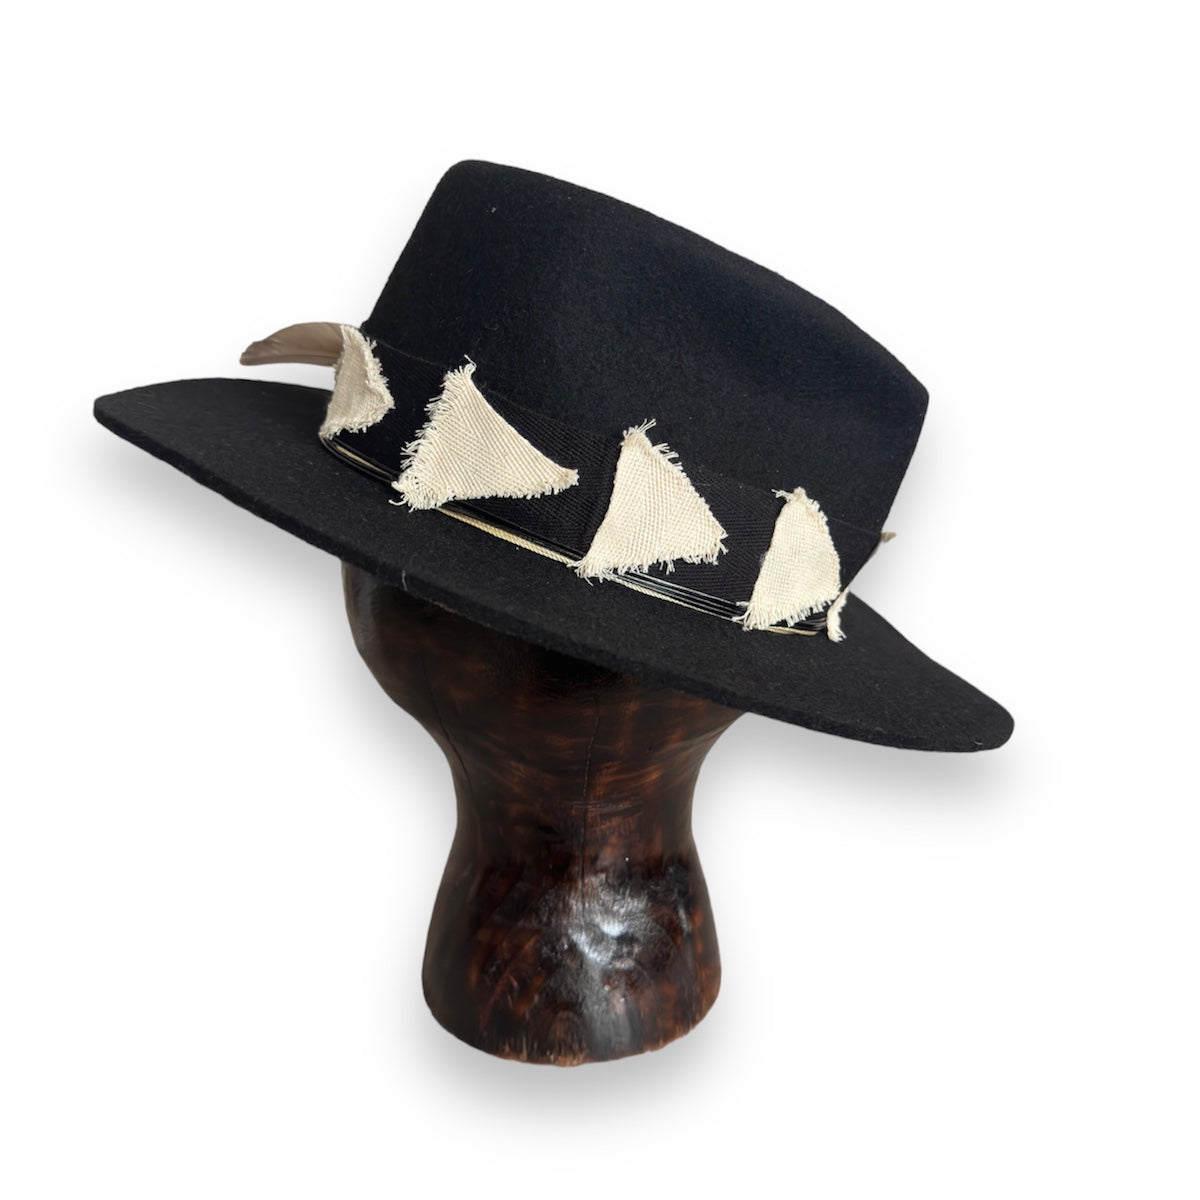 BUNT boho style hat